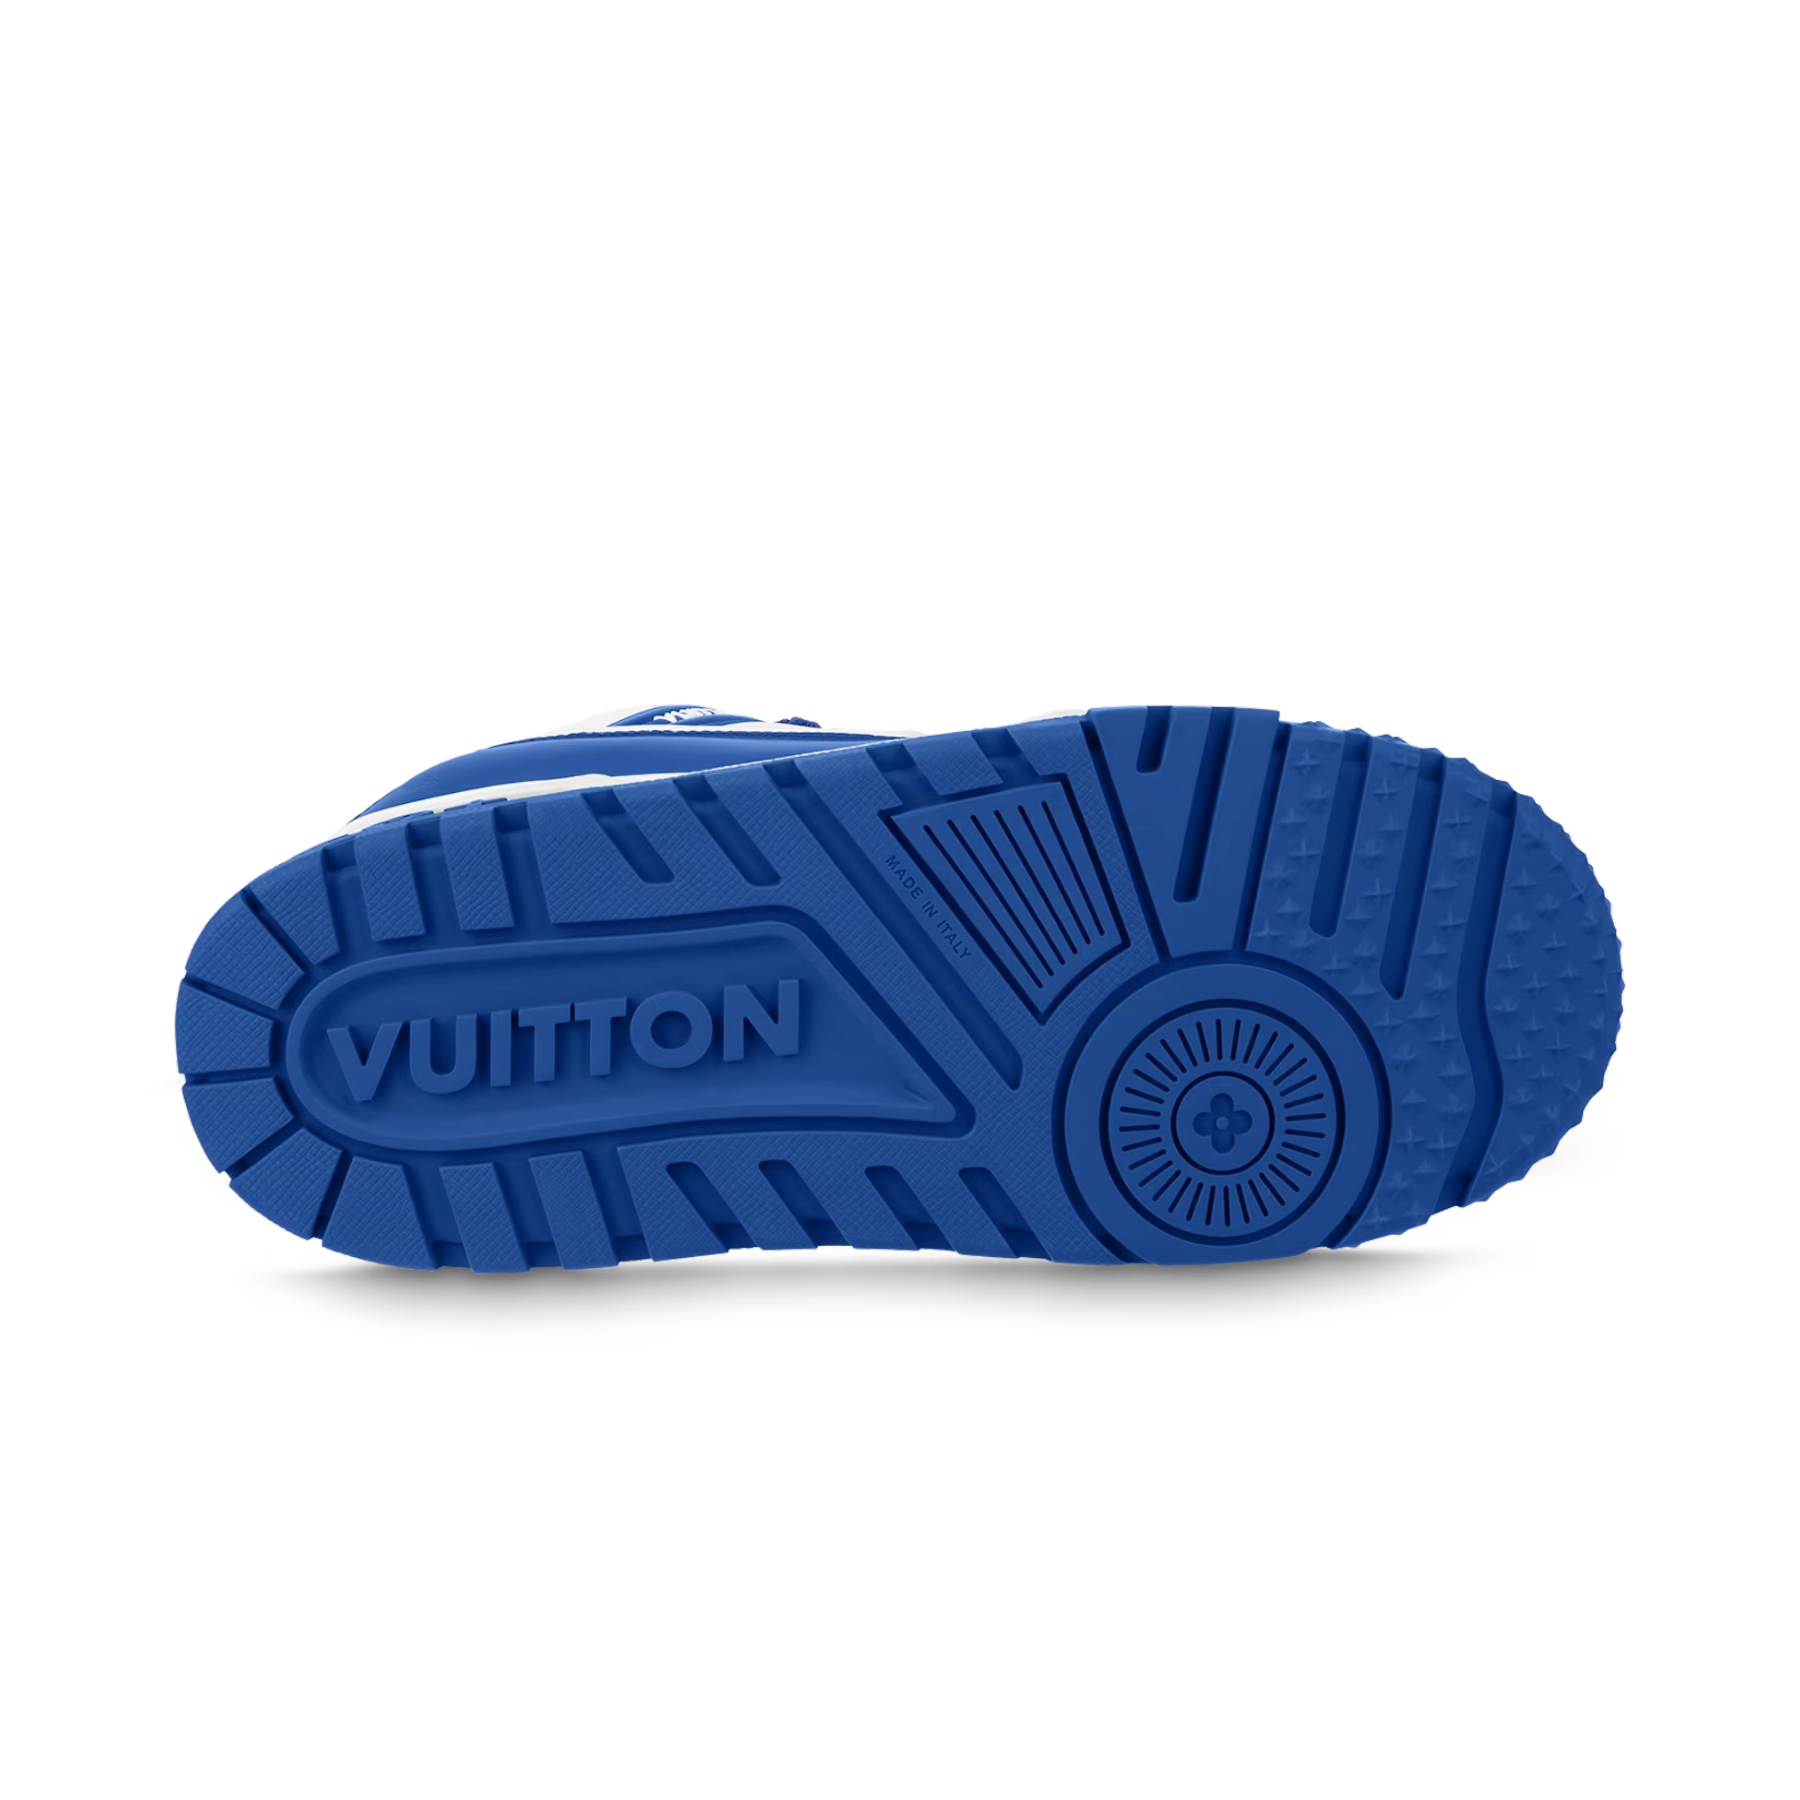 Louis Vuitton LV Trainer Maxi Sneaker Blue. Size 10.5